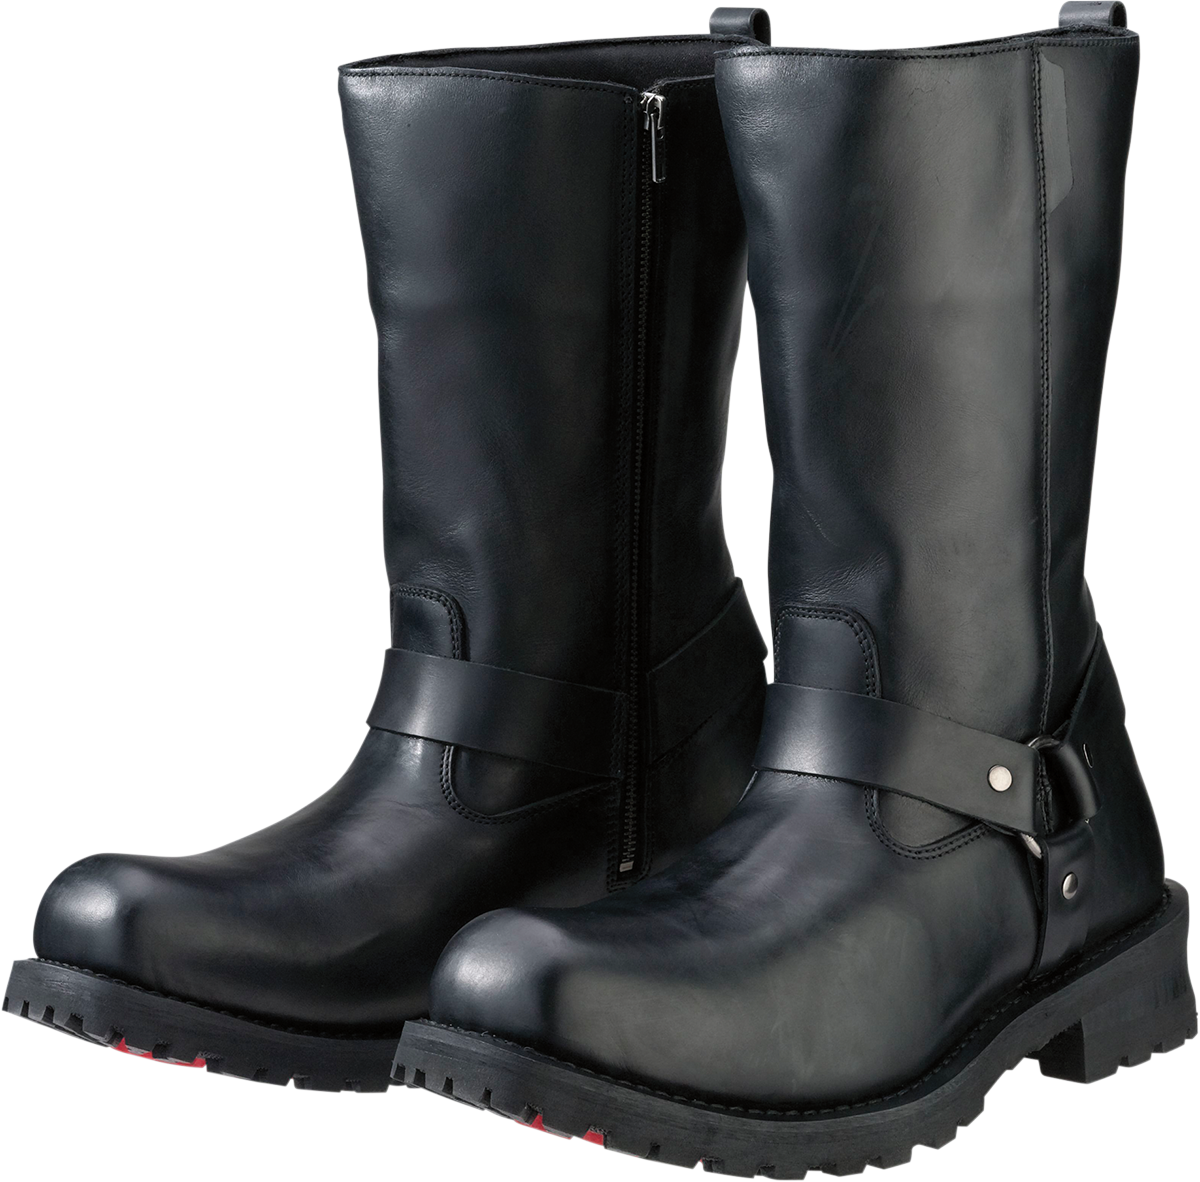 Z1R Riot Boots - Black - US 9.5 3403-0756